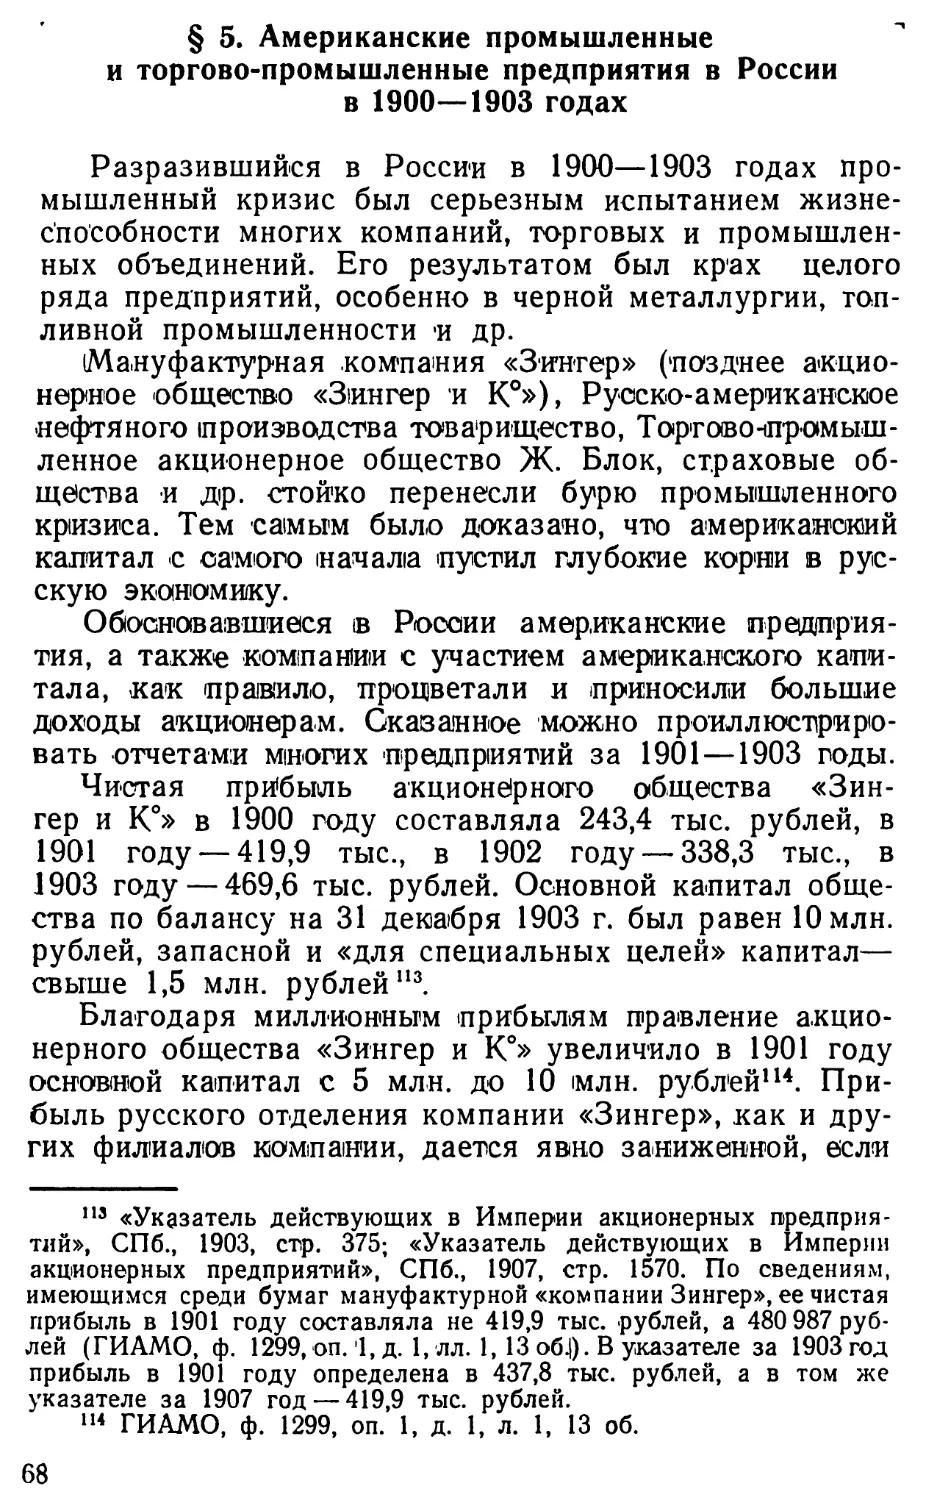 § 5. Американские промышленные и торгово-промышленные предприятия в России в 1900—1903 годах